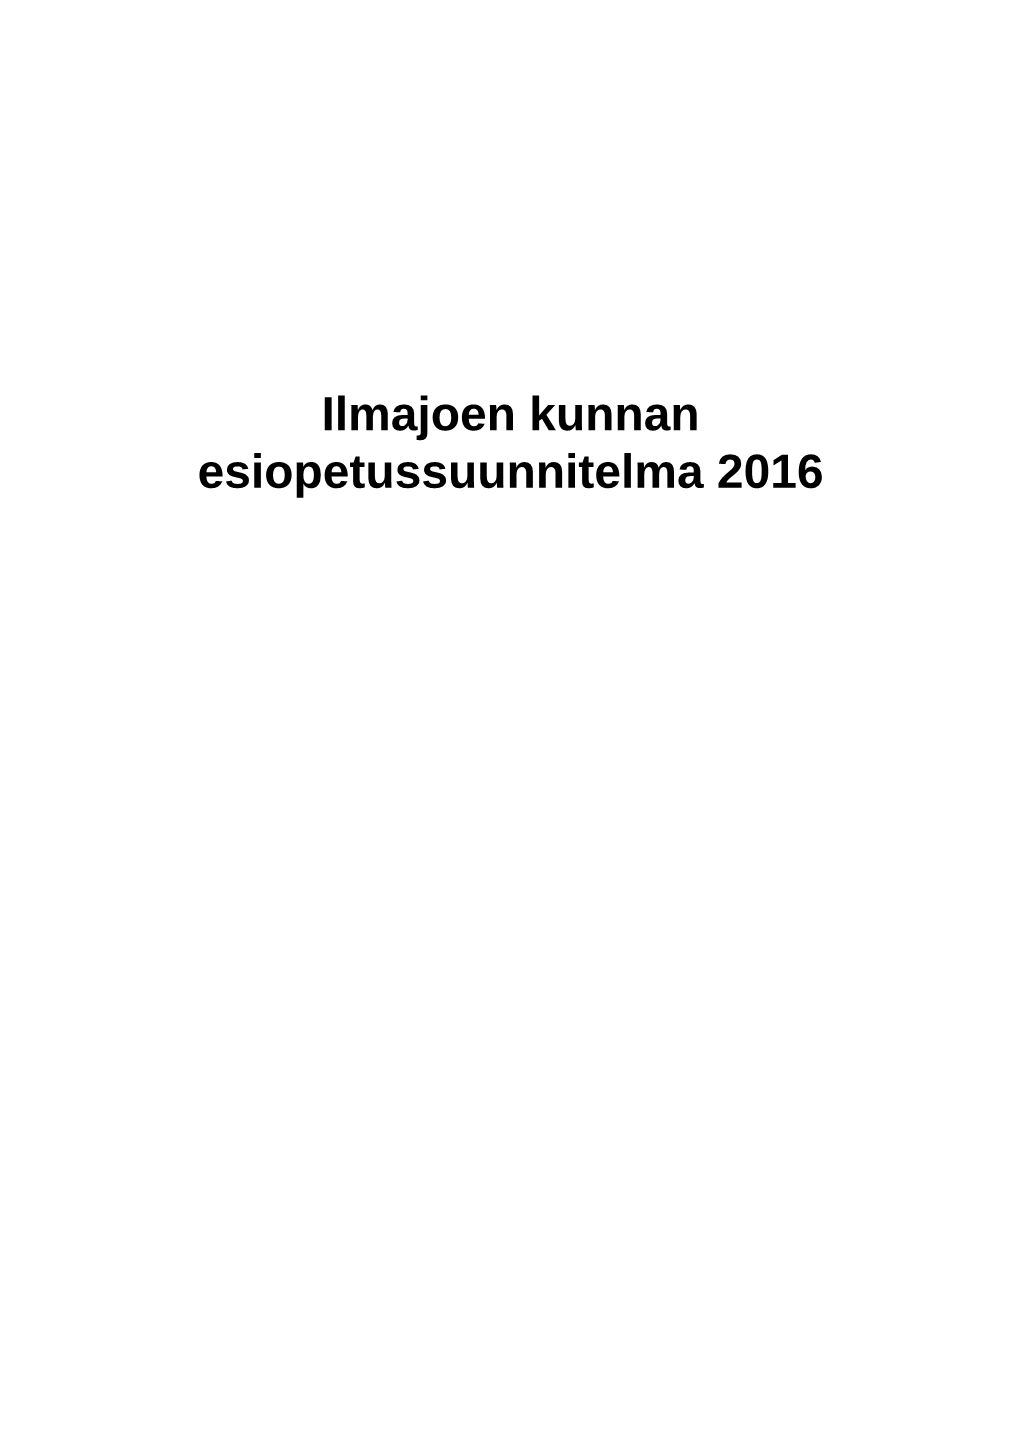 Ilmajoen Kunnan Esiopetussuunnitelma 2016 Nimi Ilmajoen Kunnan Esiopetussuunnitelma 2016 Kunta Ilmajoki Hyväksymispäivämäärä SISÄLTÖ